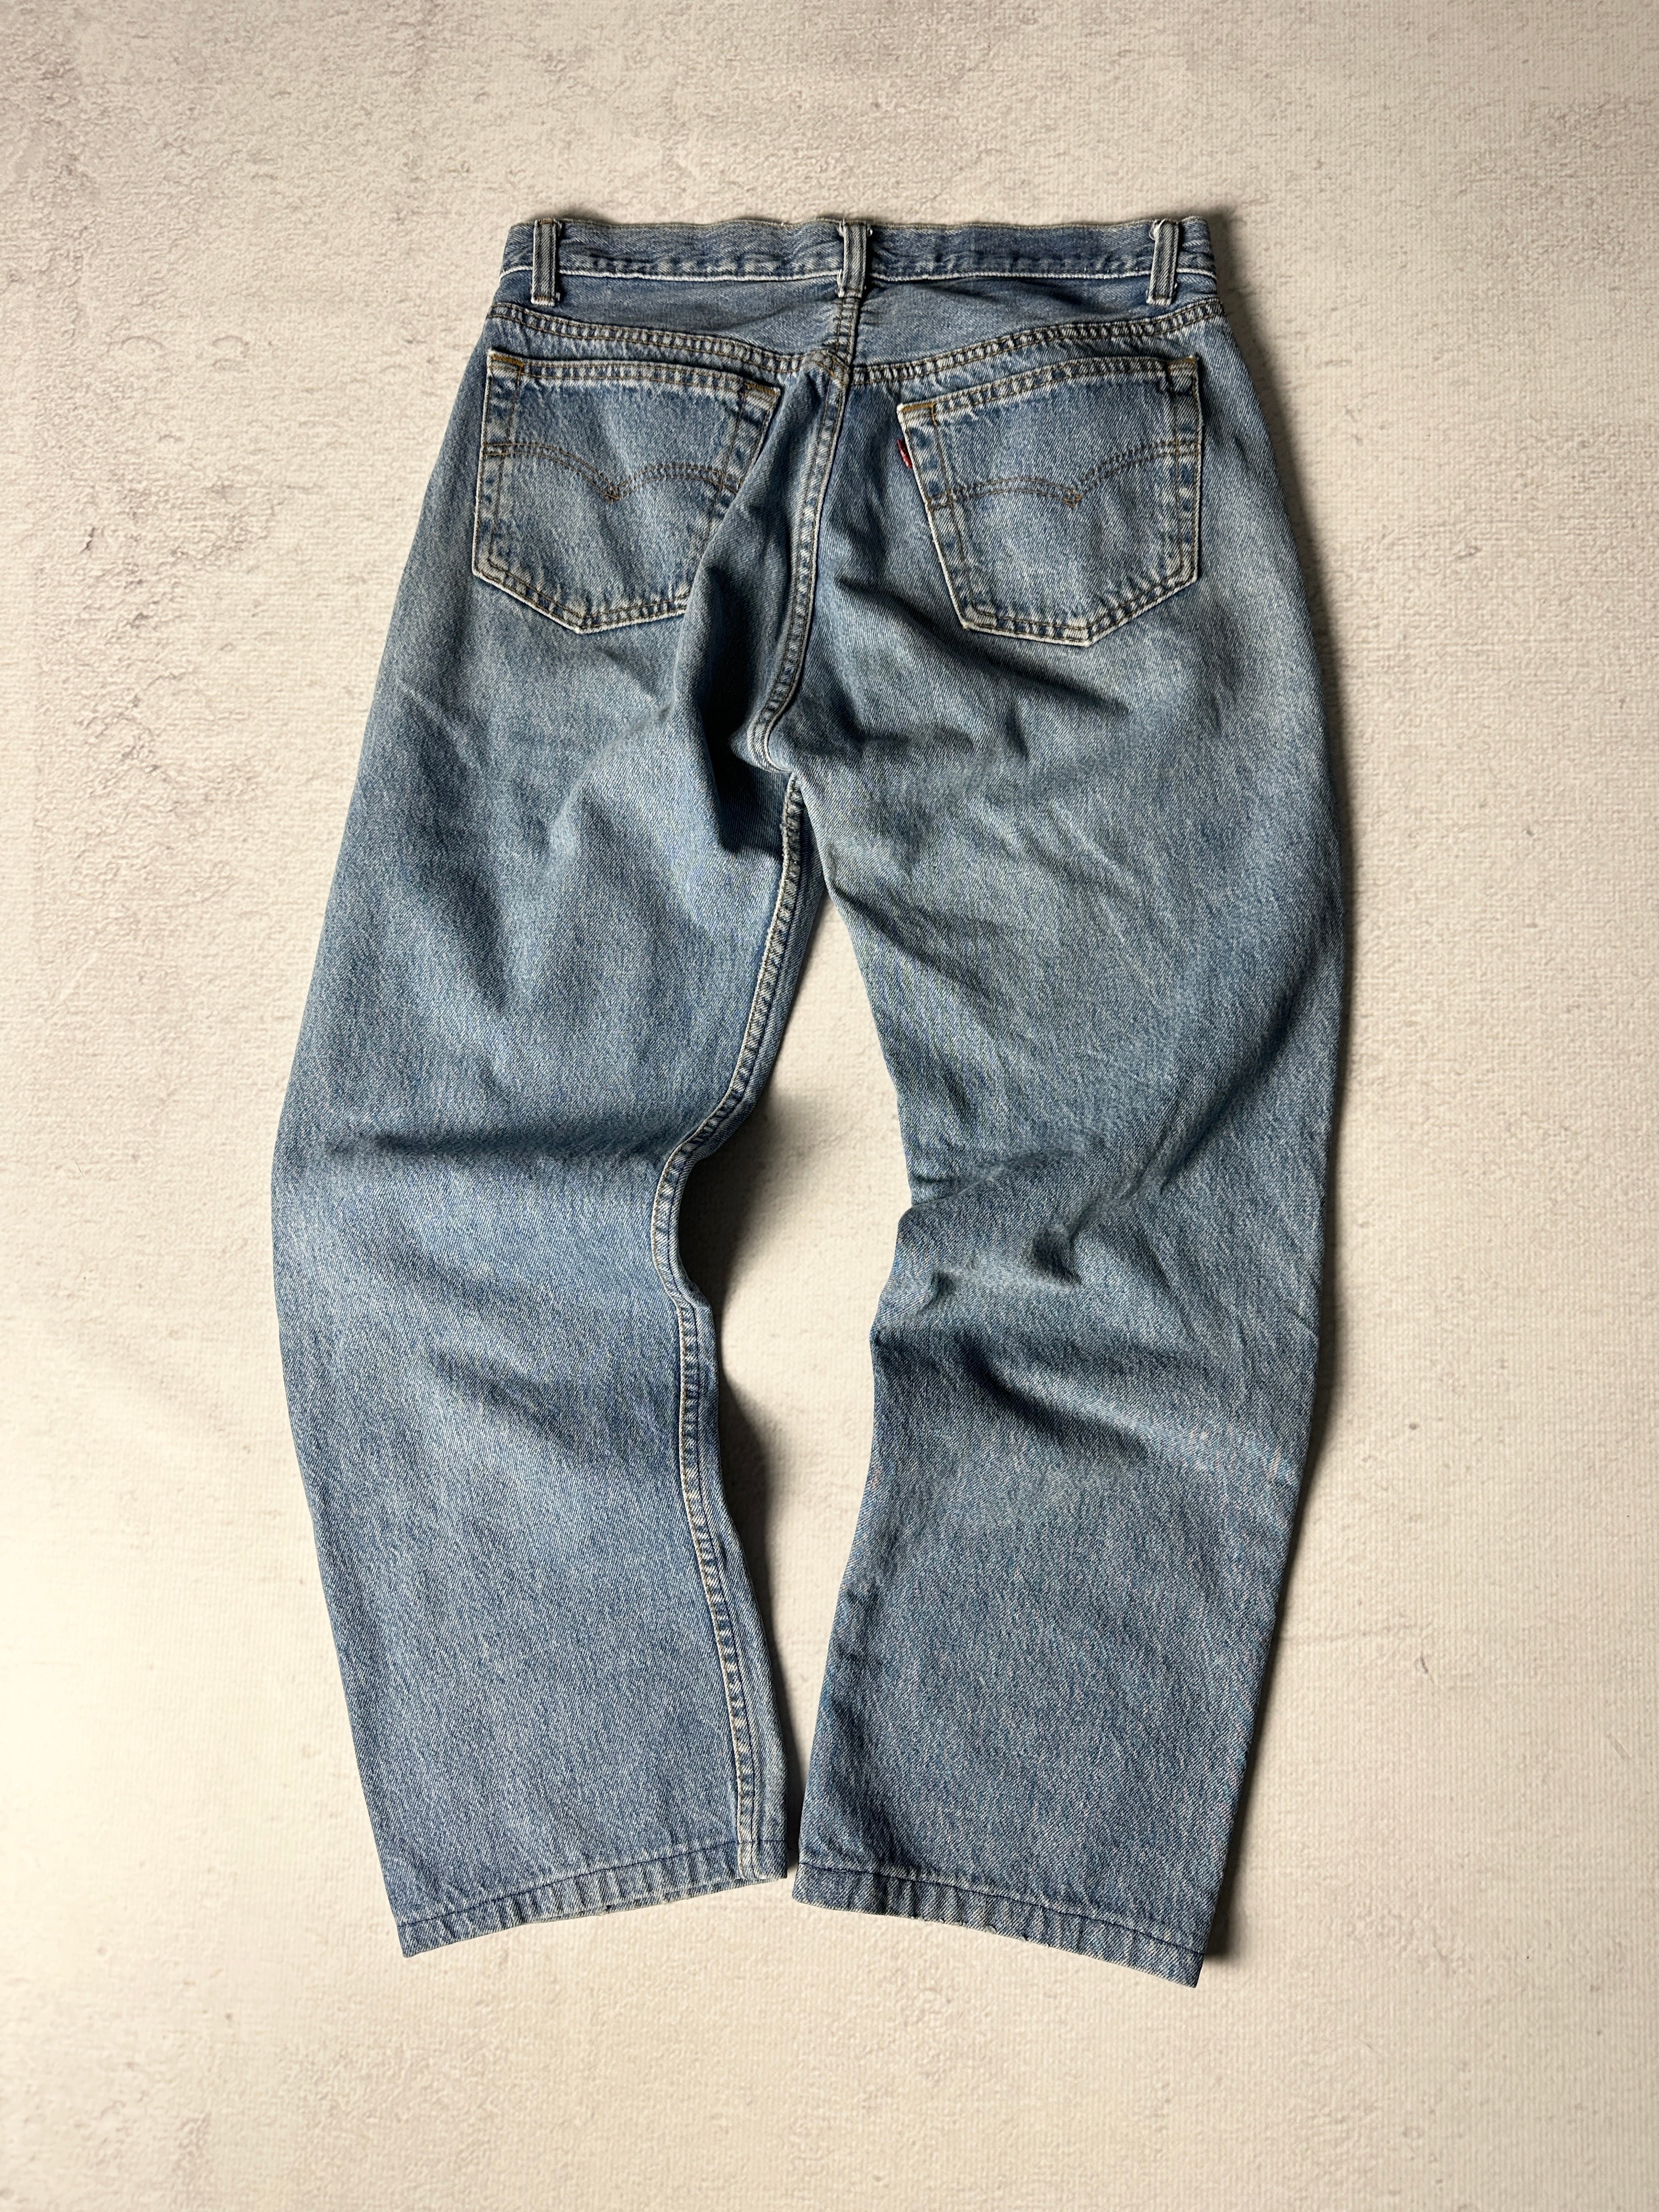 Vintage Levis Jeans - Women's 32W28L